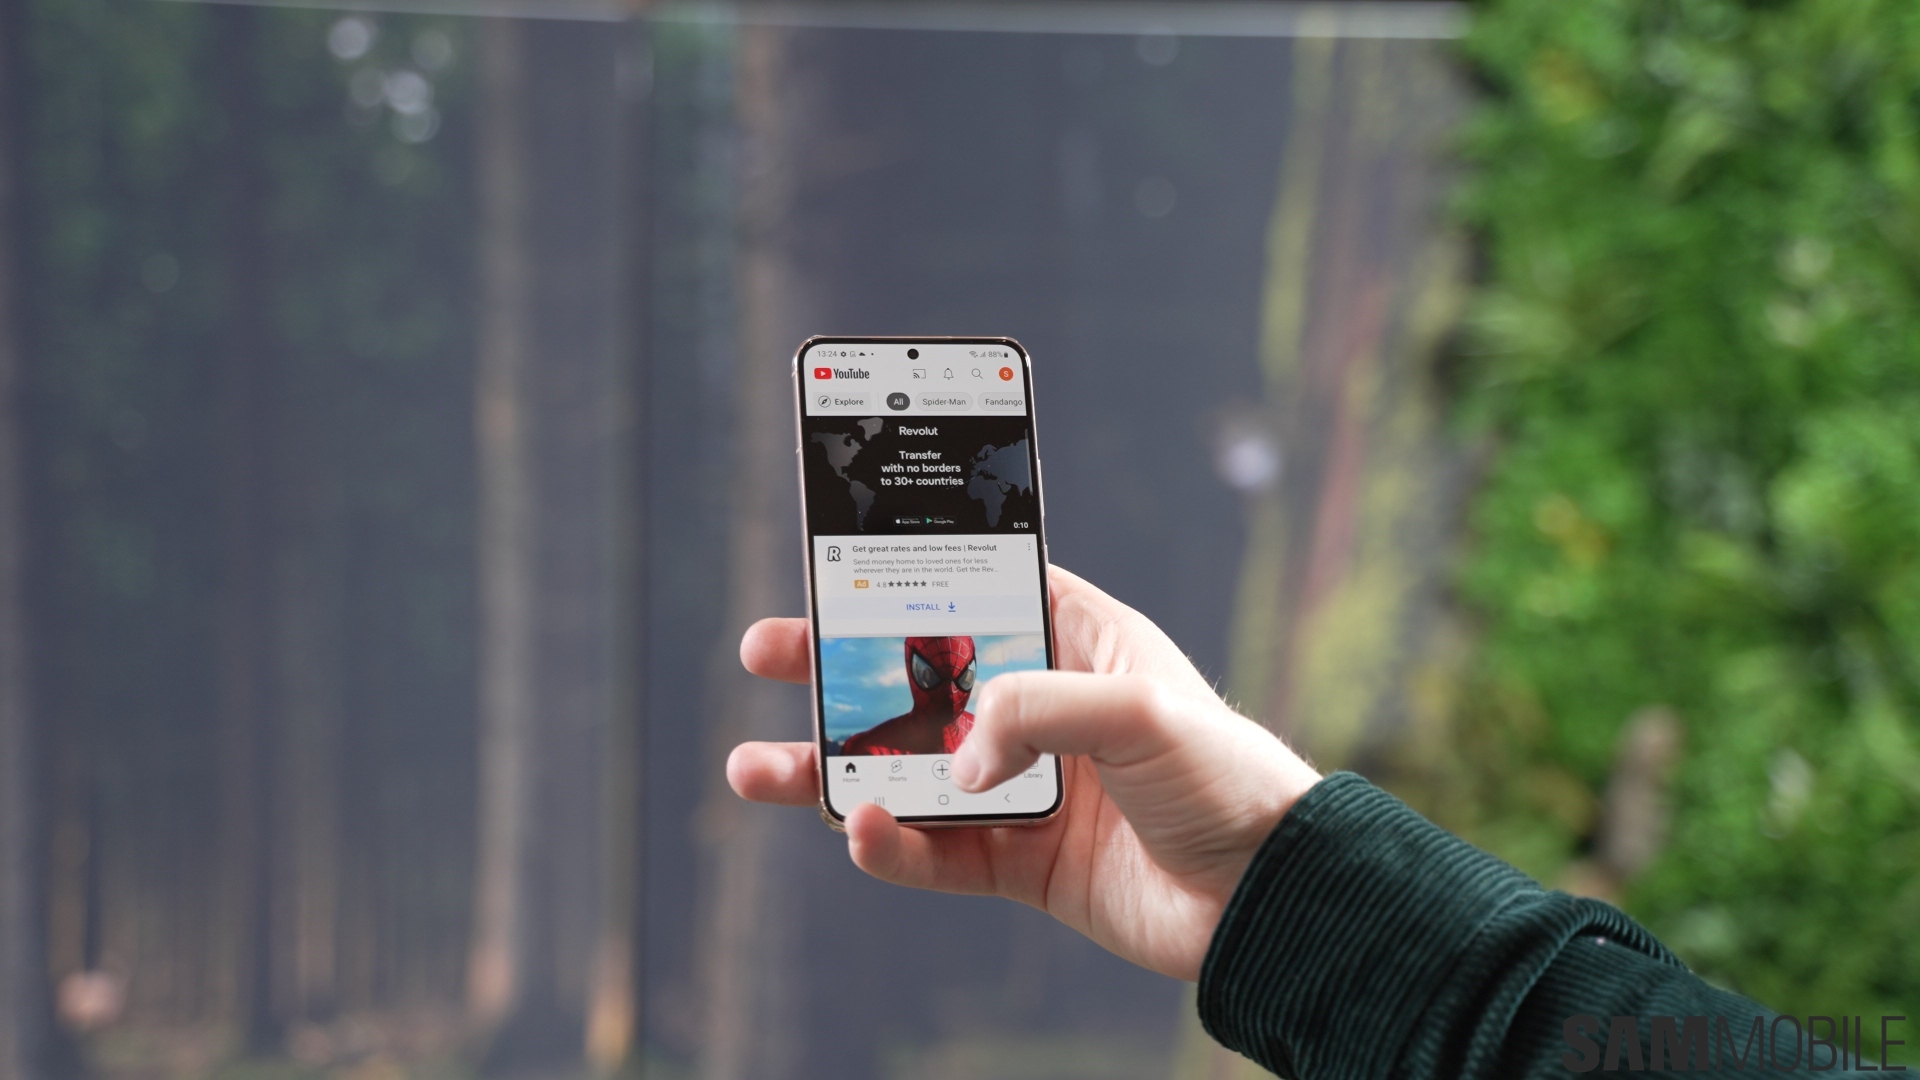 Đã đến lúc thử nghiệm chiếc điện thoại Samsung Galaxy S23 mới ra mắt với tính năng camera vượt trội! Với cảm biến ảnh đầy sáng tạo và chụp ảnh độ phân giải cao, chiếc điện thoại này sẽ đem đến cho bạn trải nghiệm vô cùng tuyệt vời khi chụp ảnh và quay phim. Hãy nhanh tay đặt hàng, nhận quà là ngay thôi!